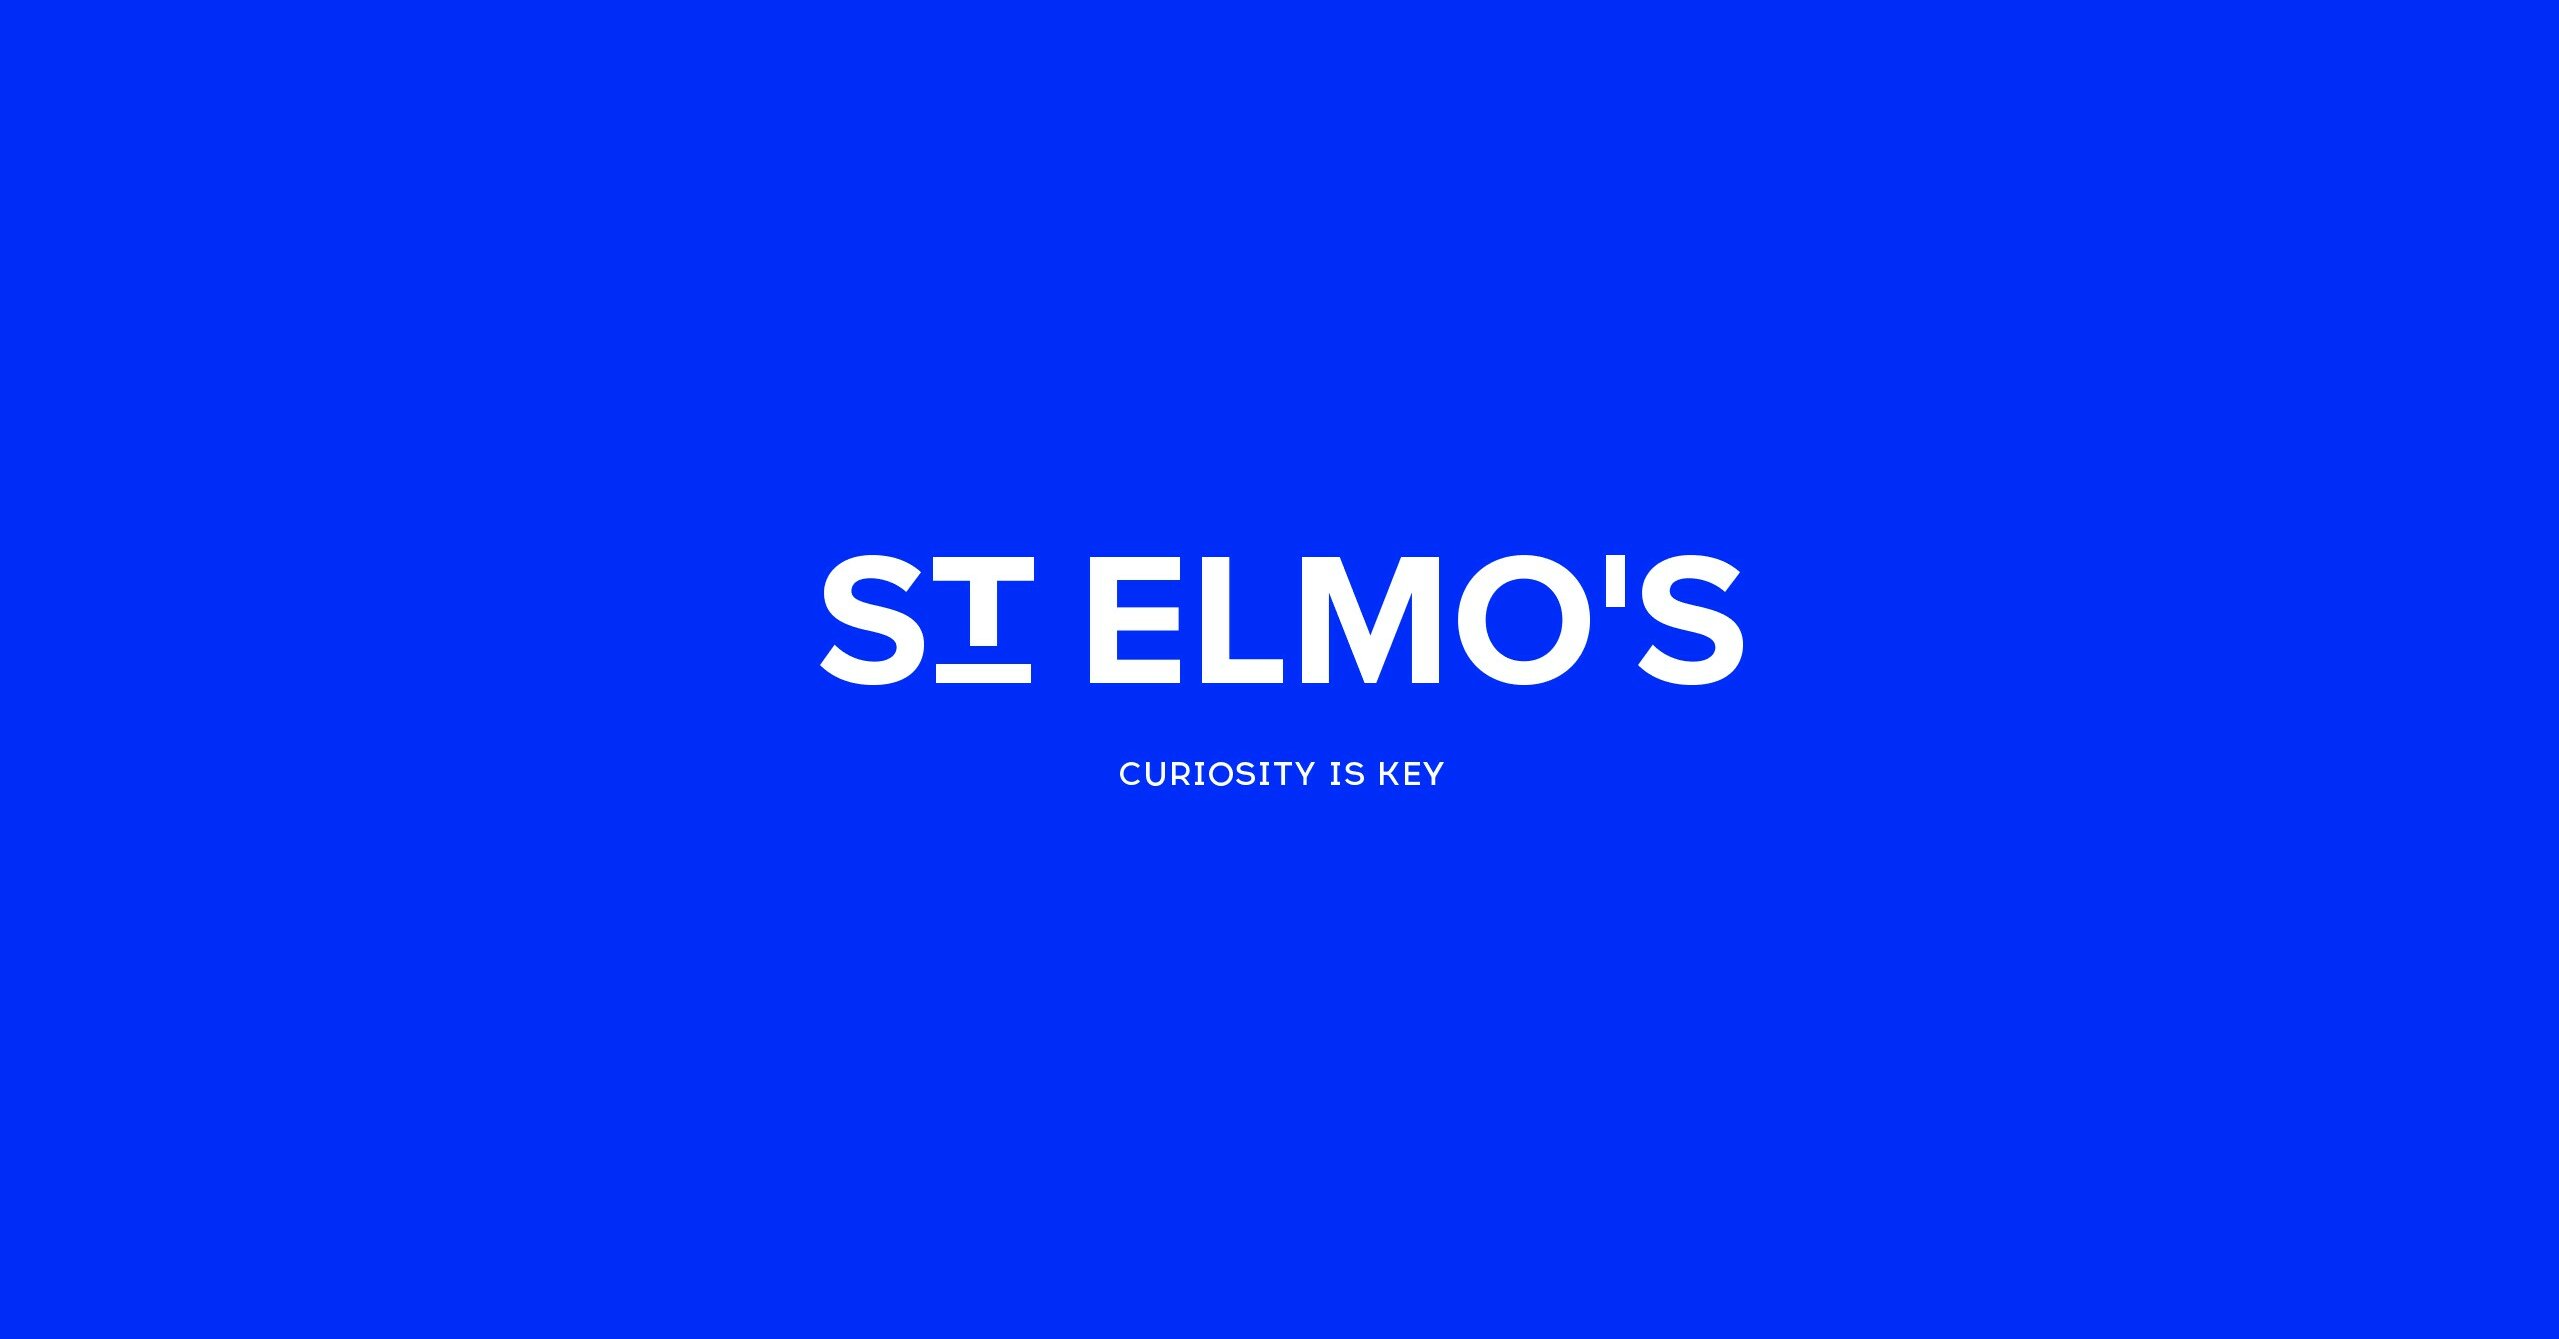 (c) Saint-elmos.com